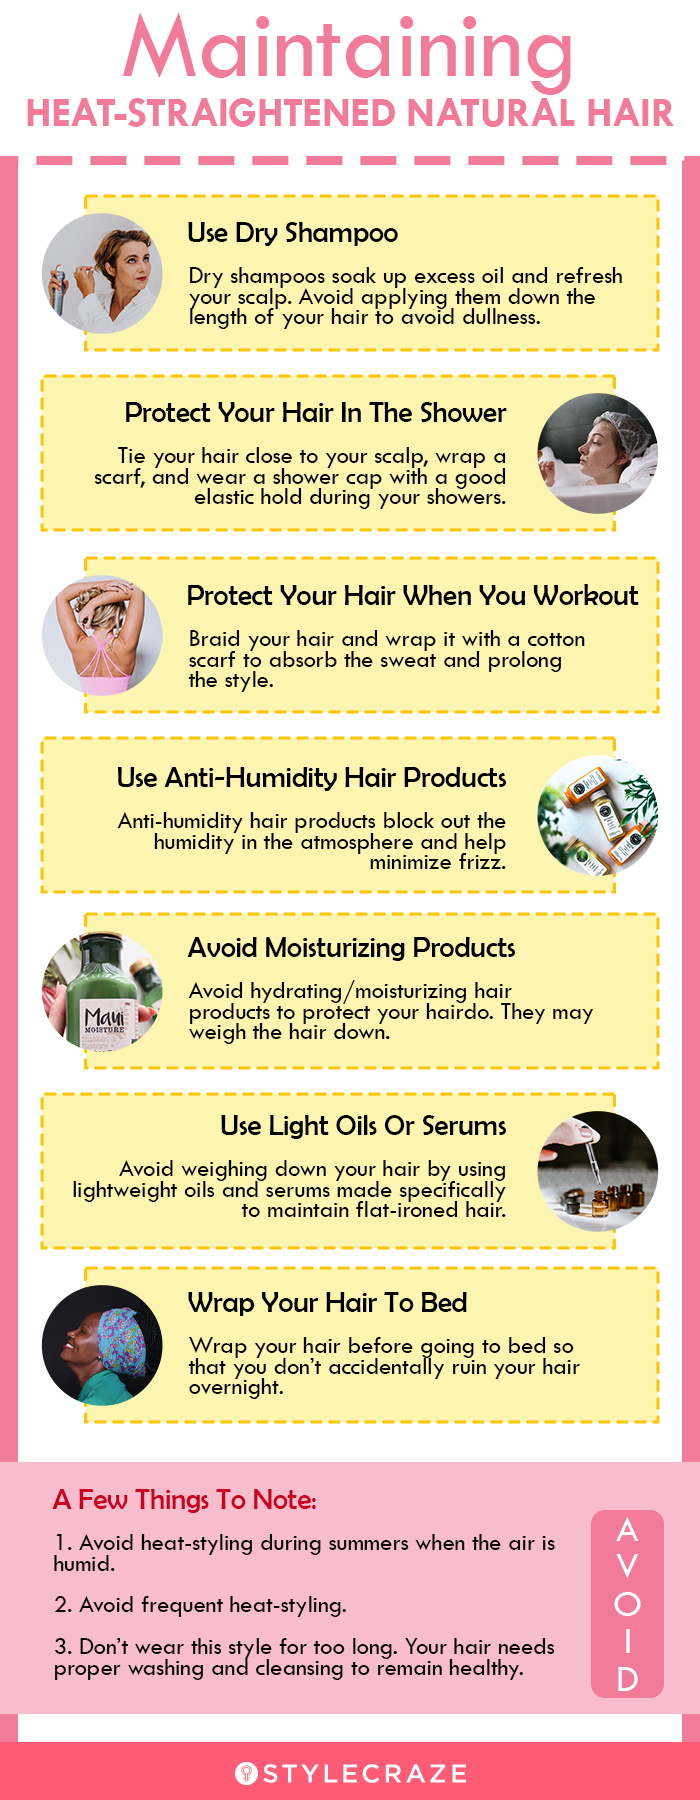 maintaining heat-straightened natural hair [infographic]